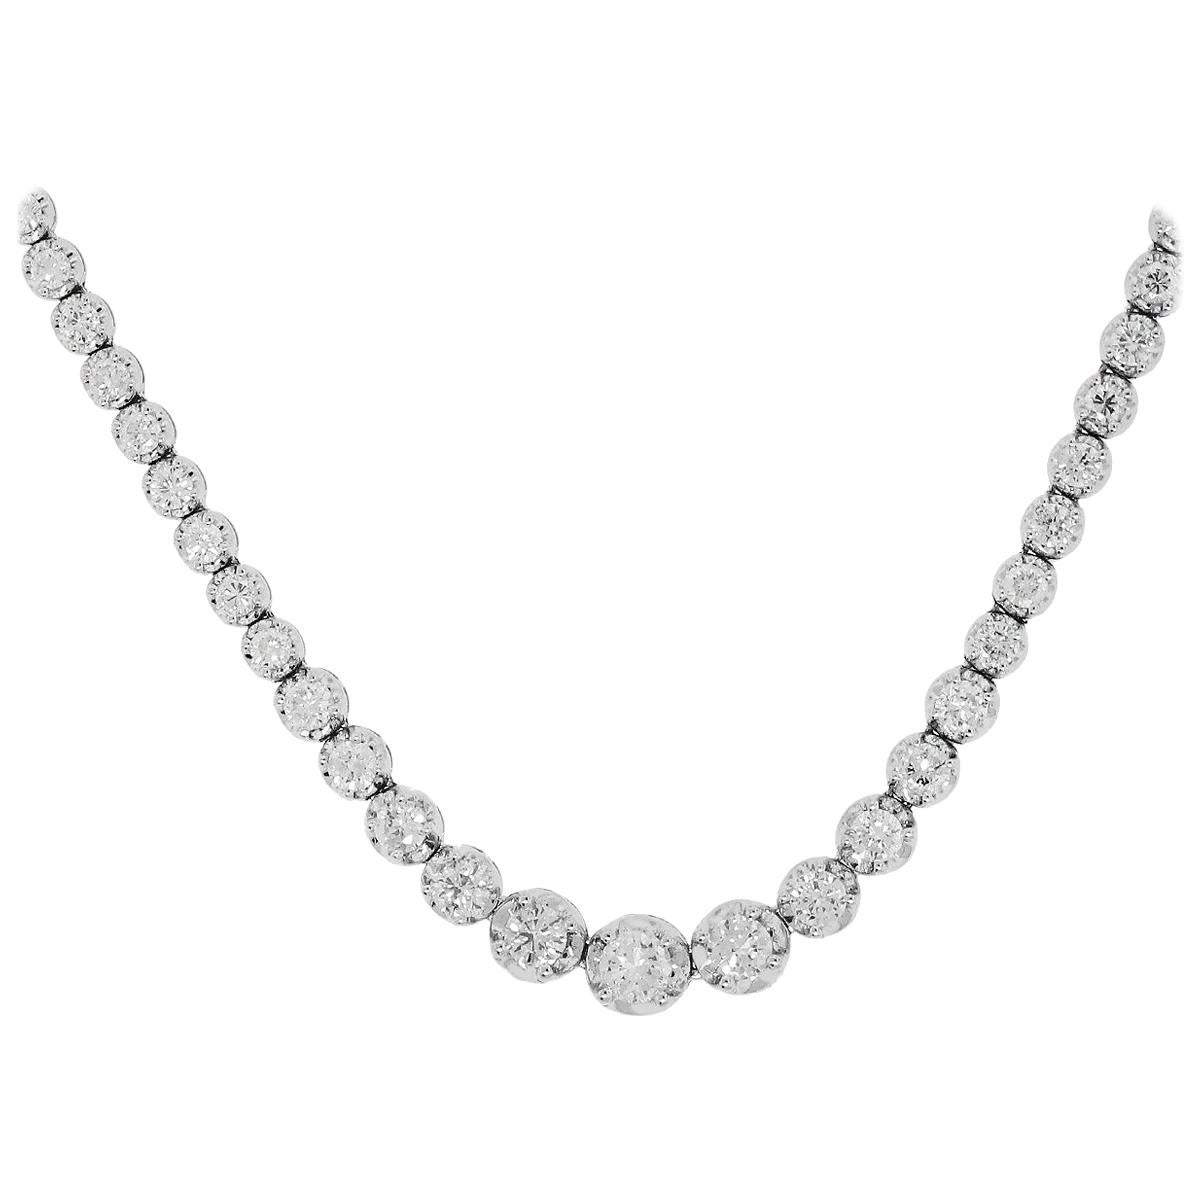 7.85 Carat Diamond Necklace